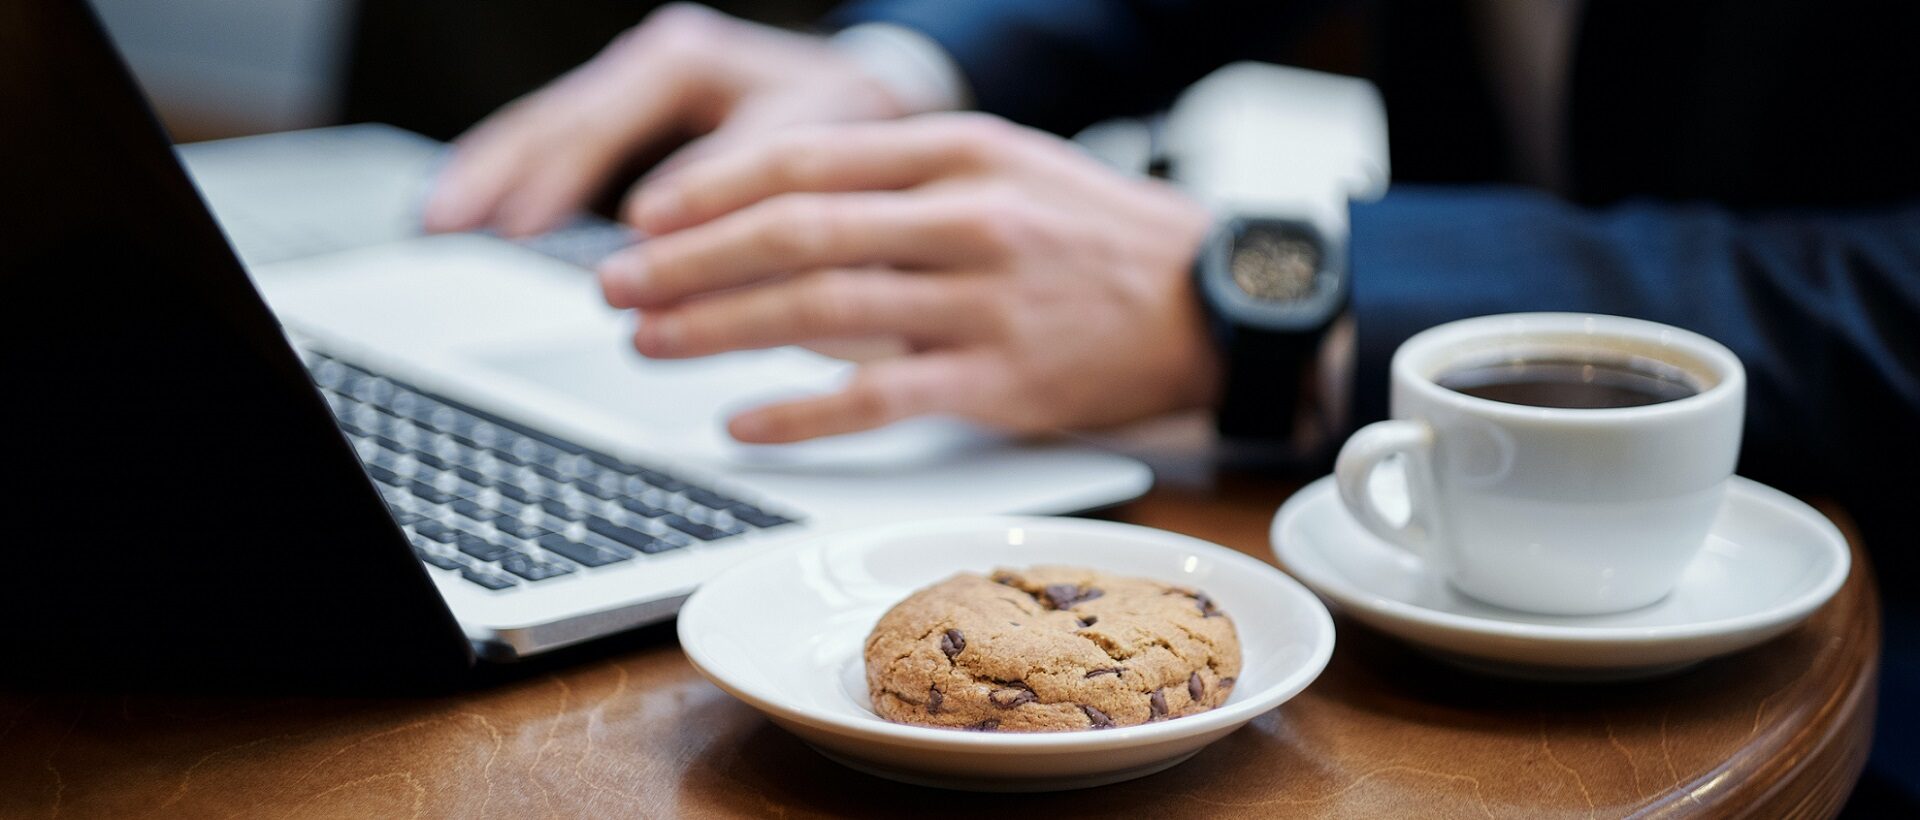 Mann schreibt am Laptop mit Kaffee und Cookie daneben